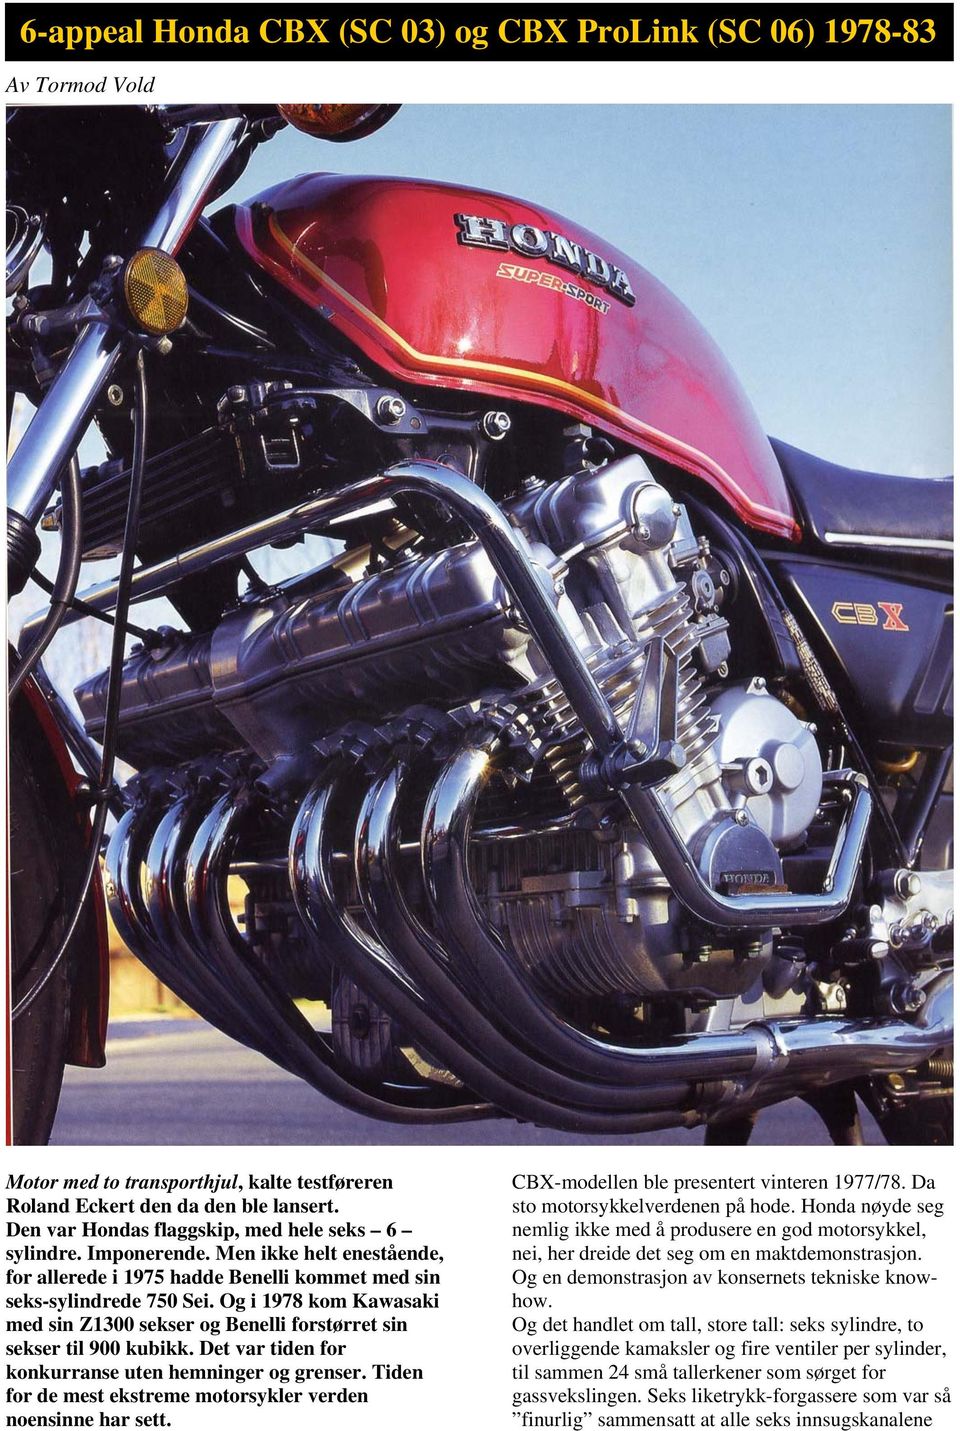 Og i 1978 kom Kawasaki med sin Z1300 sekser og Benelli forstørret sin sekser til 900 kubikk. Det var tiden for konkurranse uten hemninger og grenser.